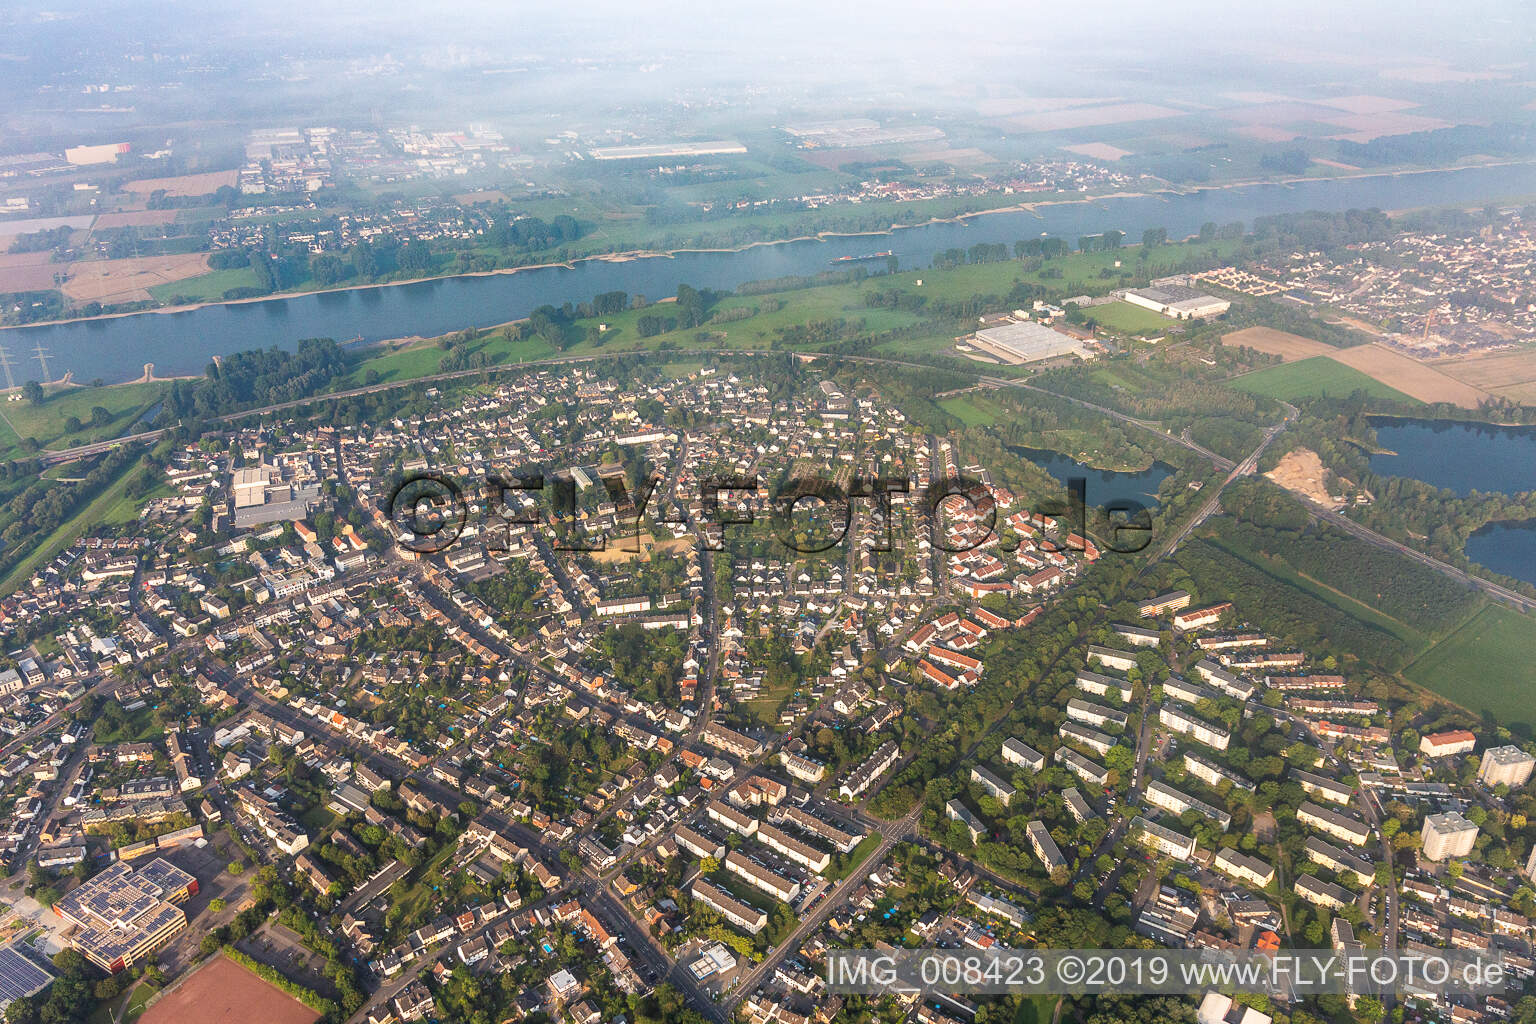 Luftbild von An der Wupper-Mündung in Rheindorf im Bundesland Nordrhein-Westfalen, Deutschland